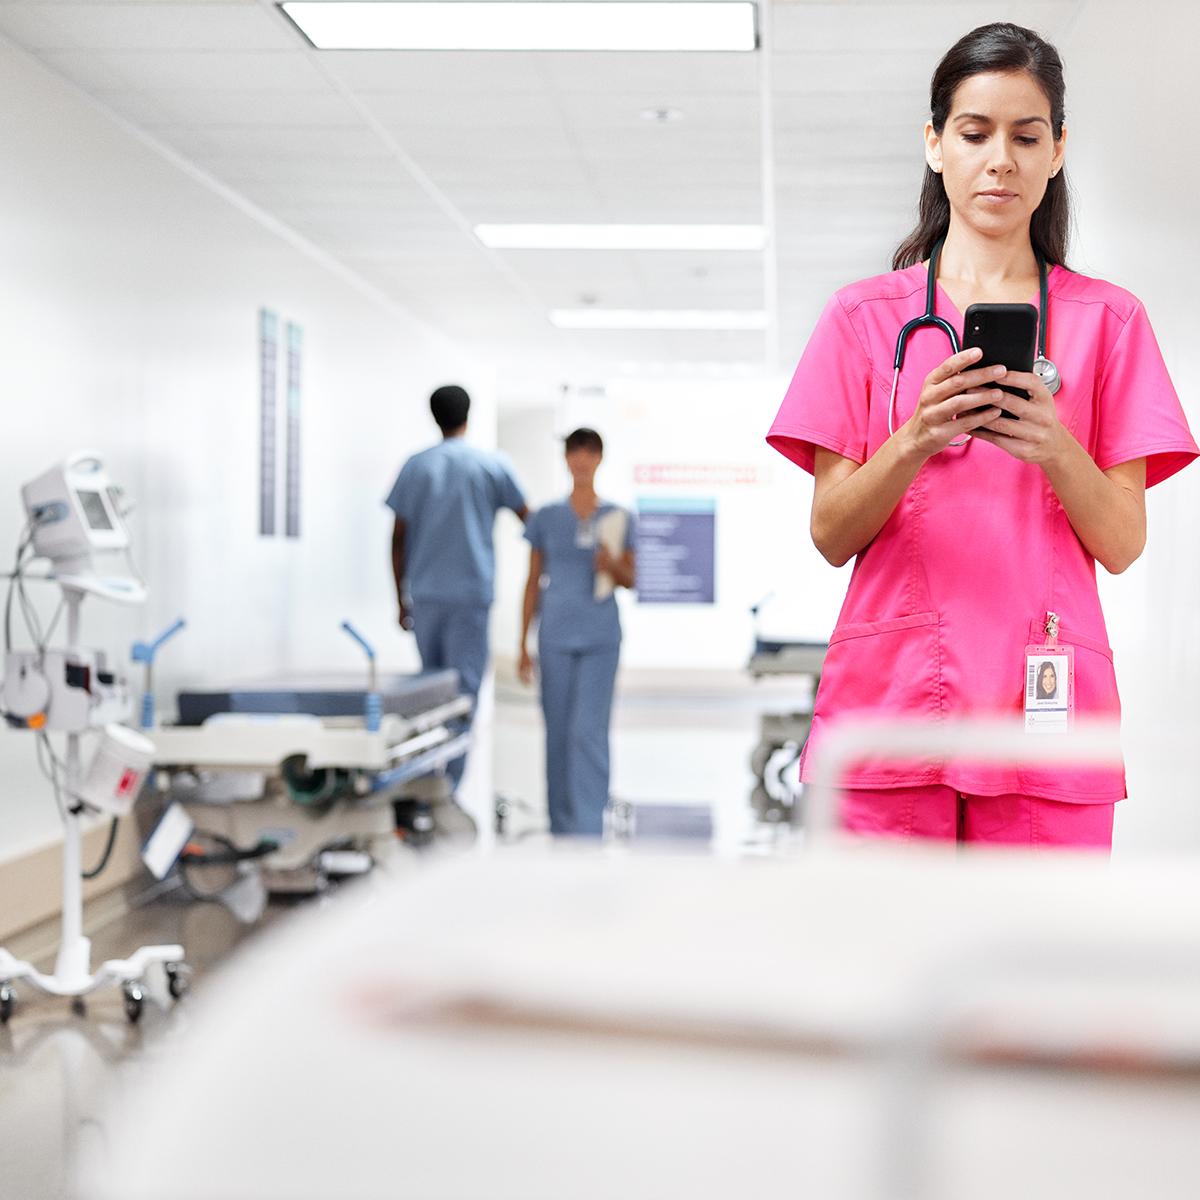 Uma médica verifica a mensagem de texto em seu telefone enquanto aguarda em um corredor hospitalar. Ela está usando uma roupa de hospital rosa.